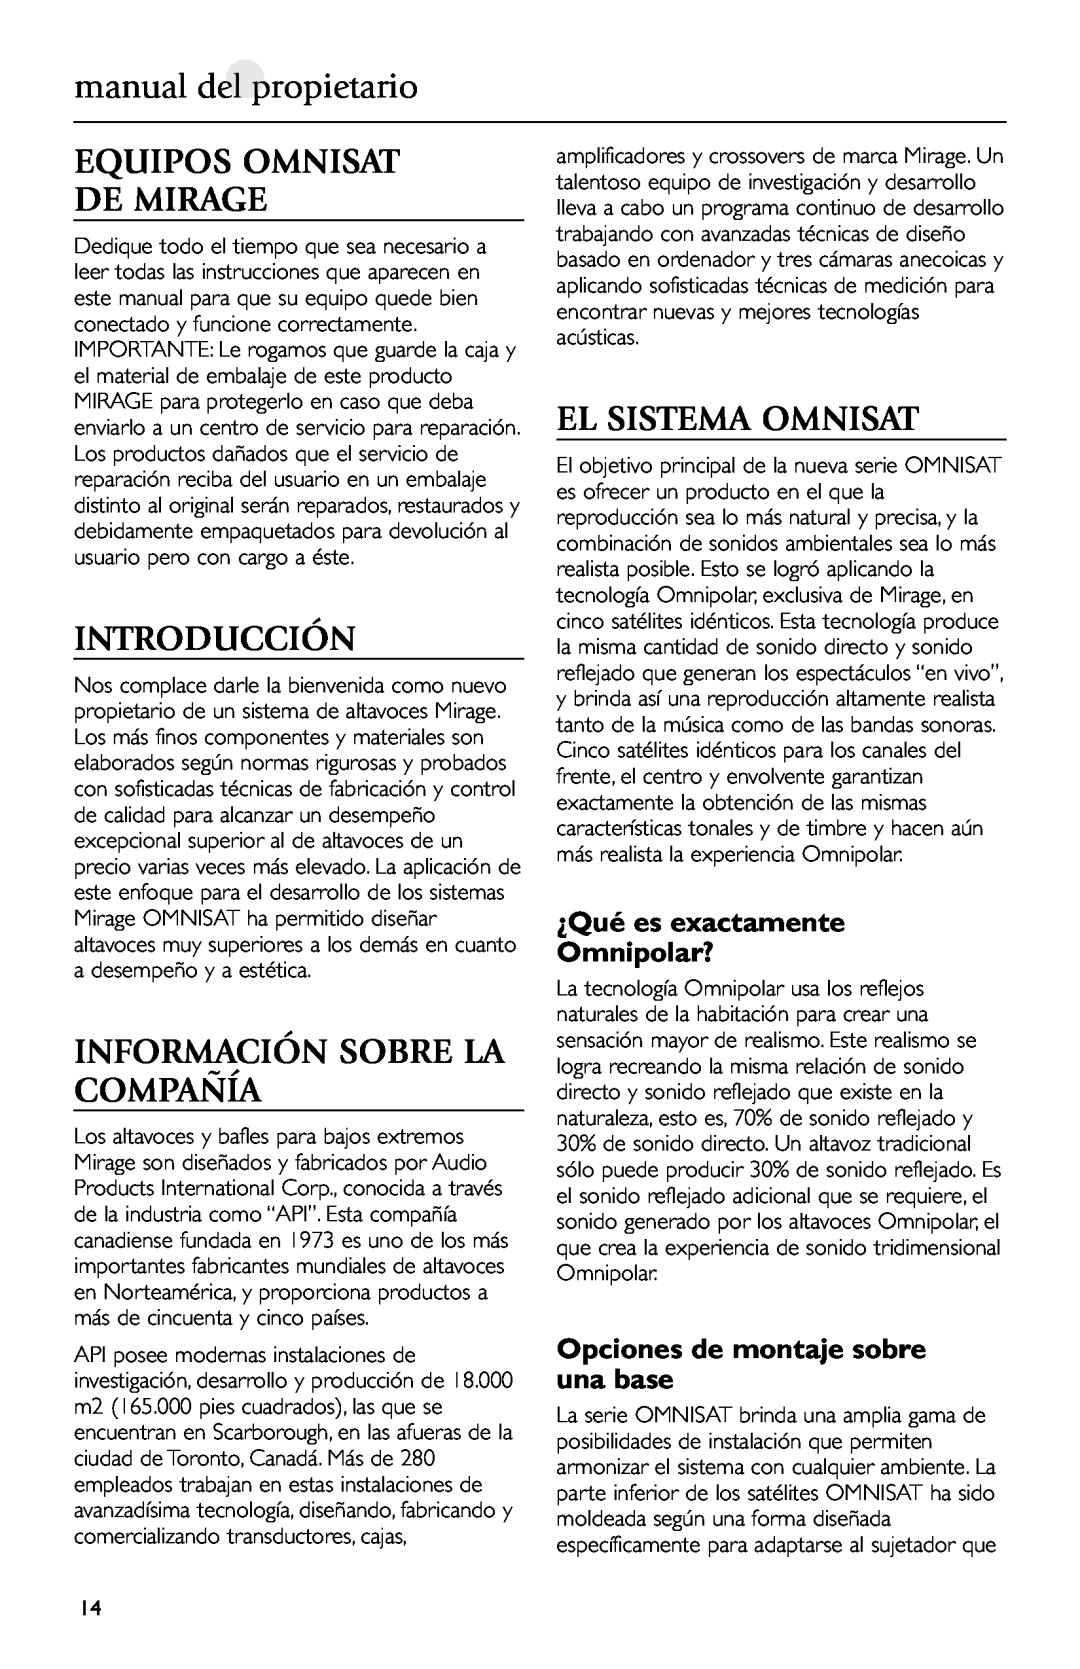 Mirage Loudspeakers manual del propietario, Equipos Omnisat De Mirage, Introducción, Información Sobre La Compañía 